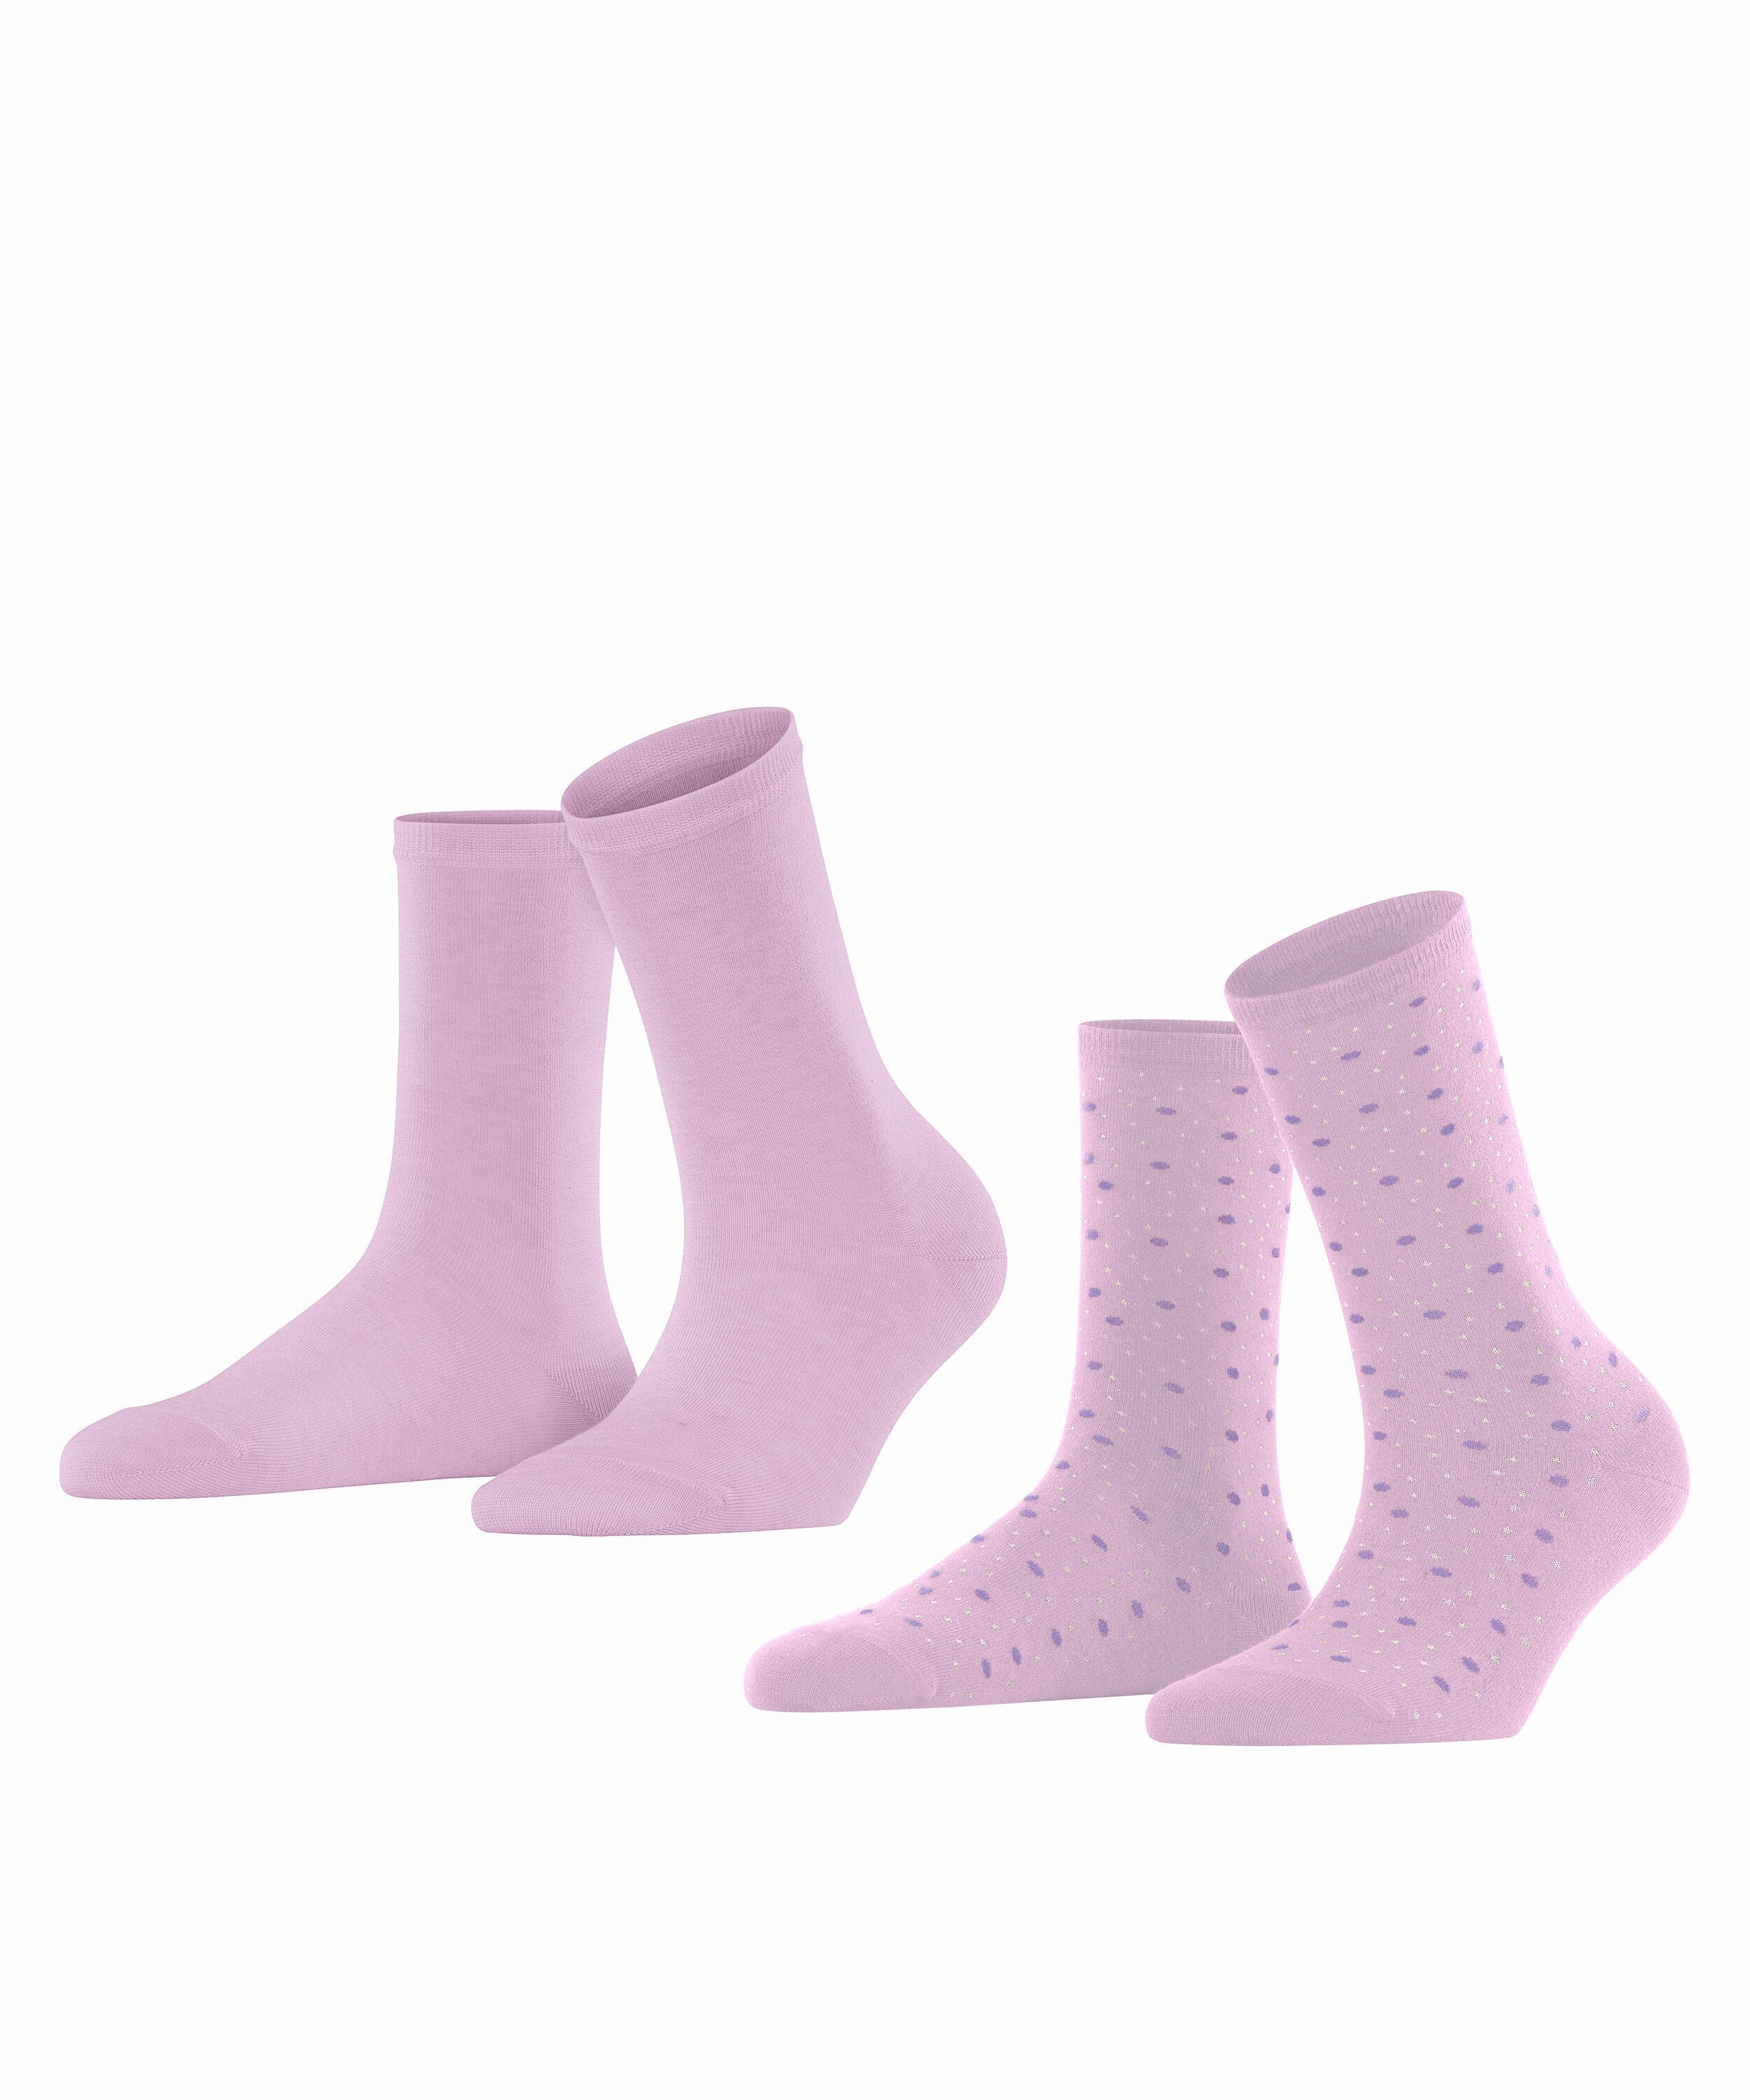 Esprit Socken Playful Dot 2-Pack (2-Paar) lupine (8299)